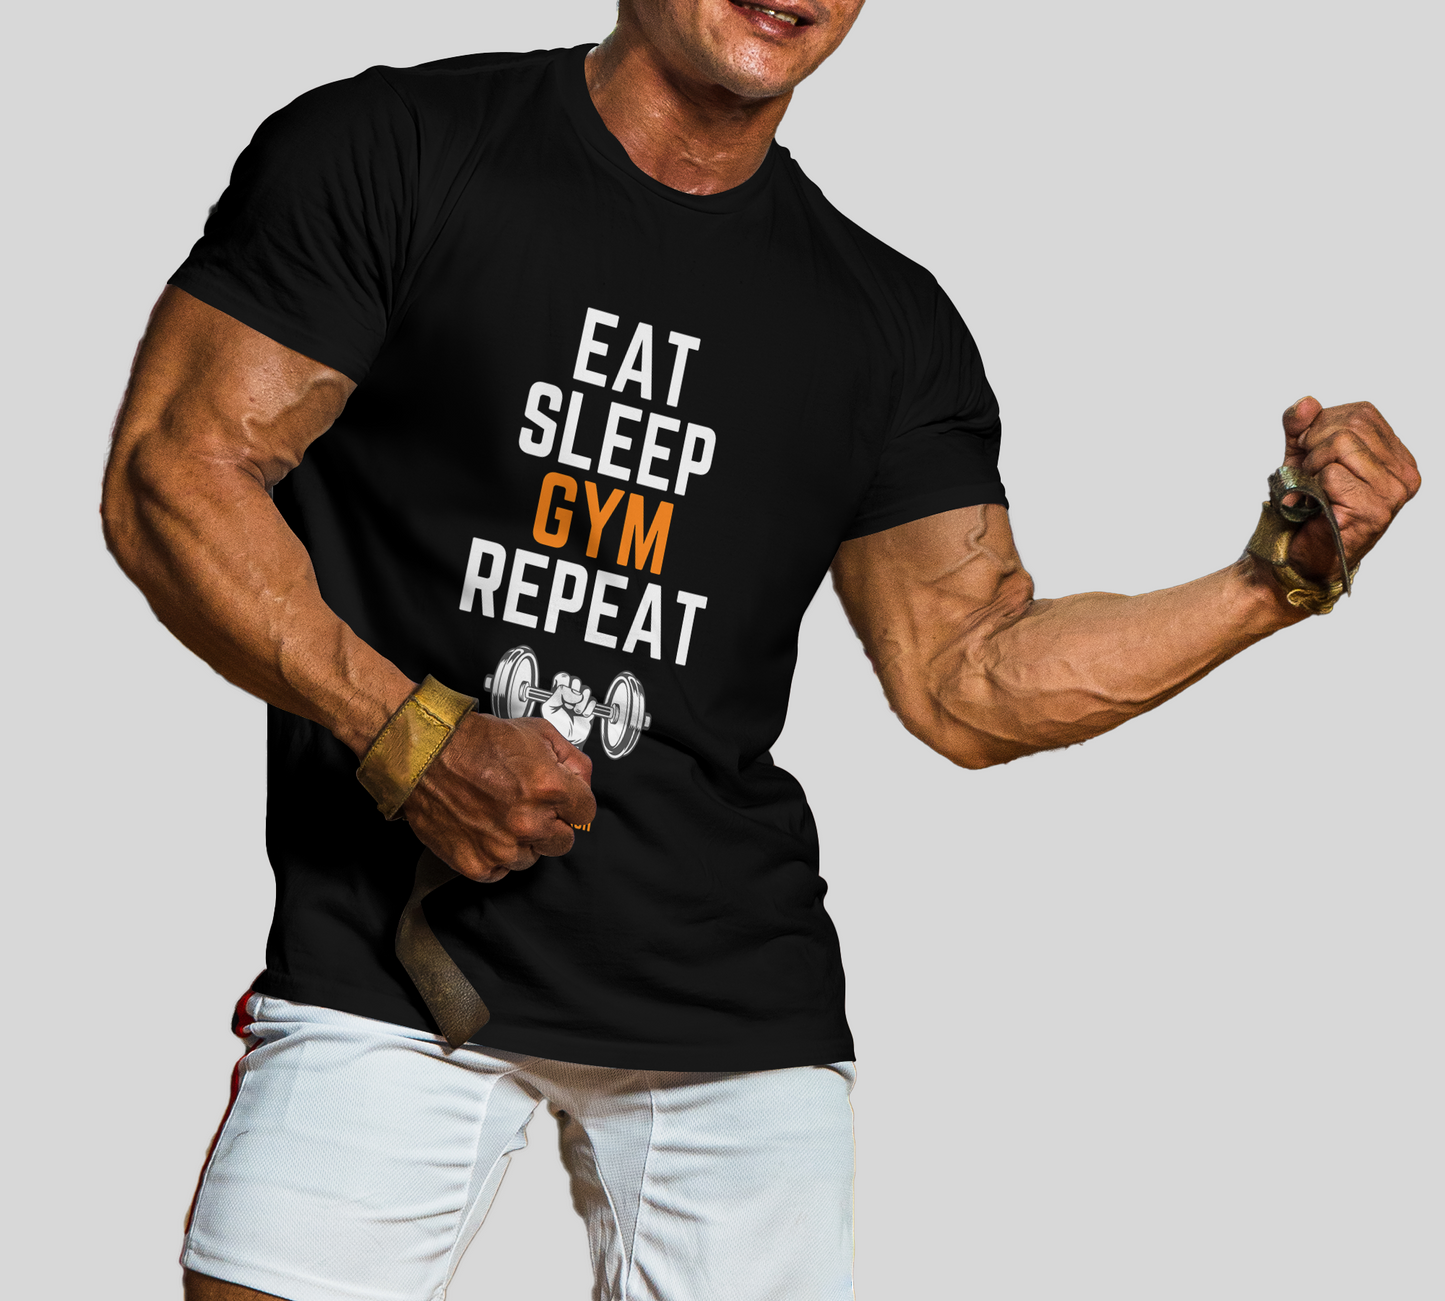 Eat Sleep Gym Repeat T-Shirt In Dark - Mon Zurich Originals